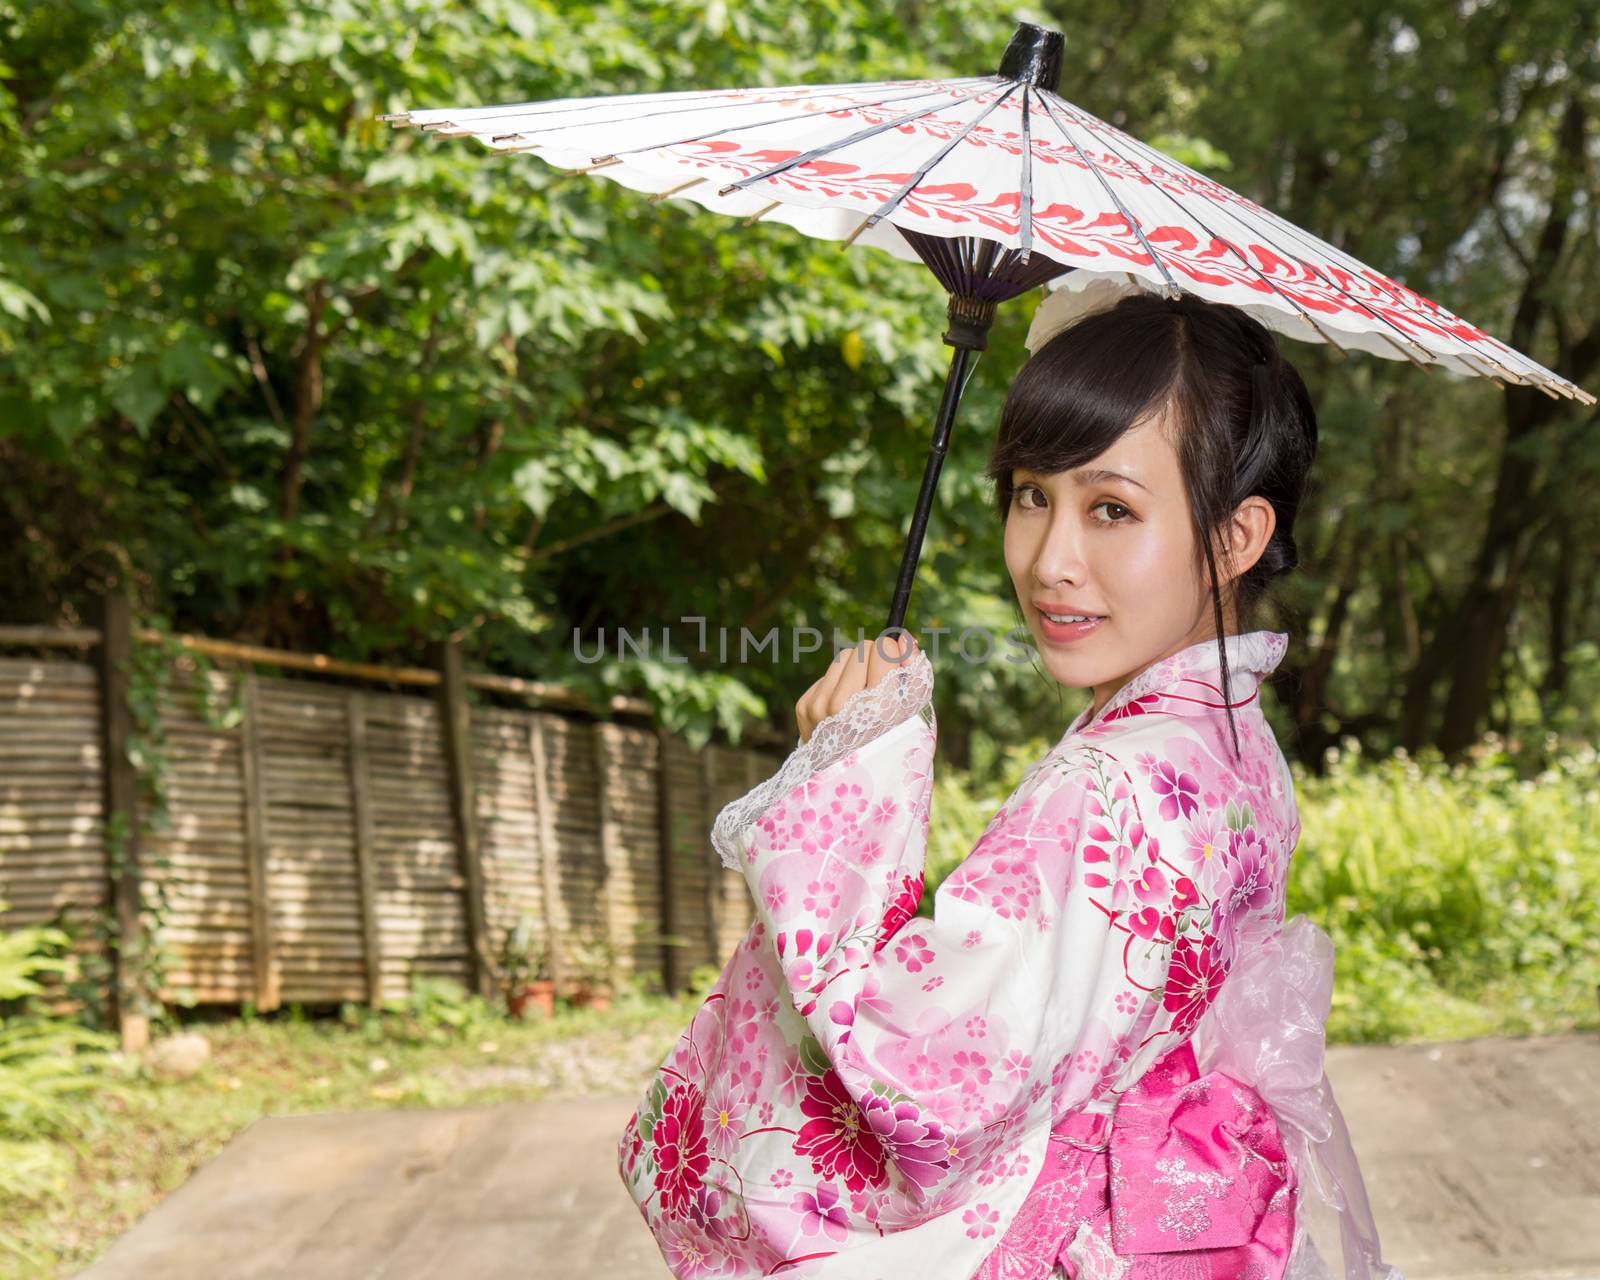 Asian woman in a kimono in a Japanese style garden holding an umbrella